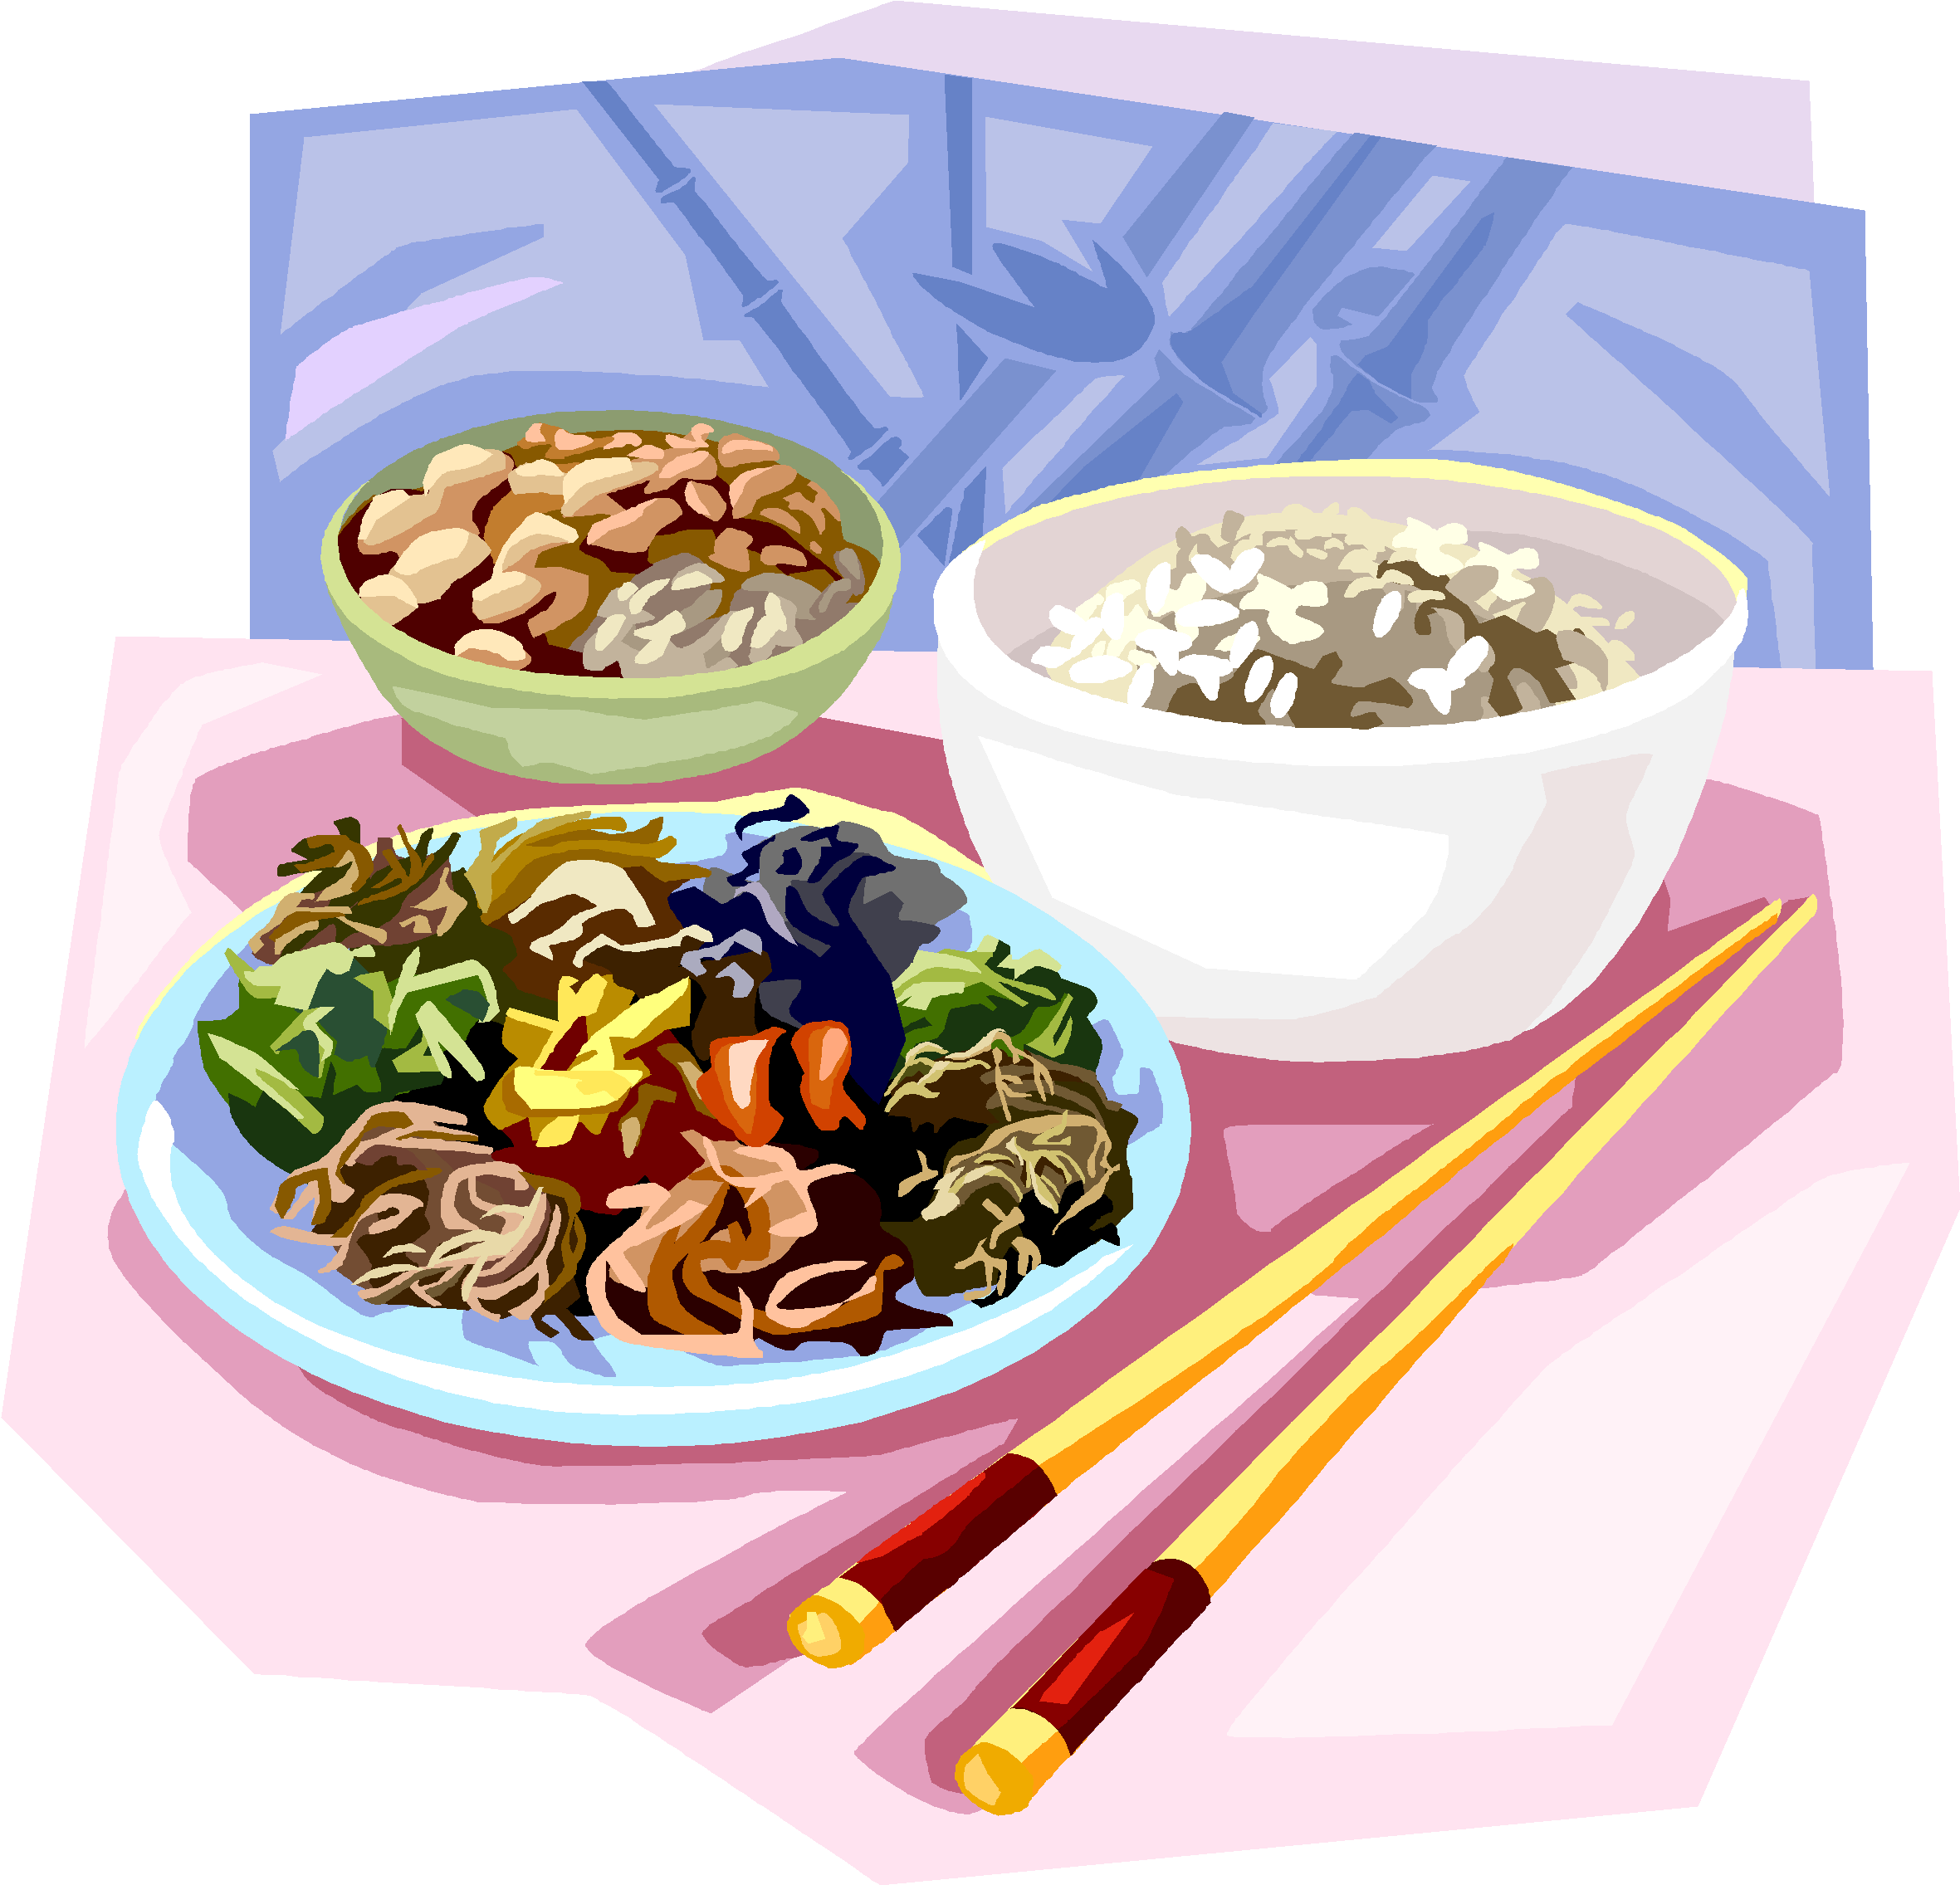 रात्रिभोज क्लिपआर्ट, चीनी व्यंजन, भोजन